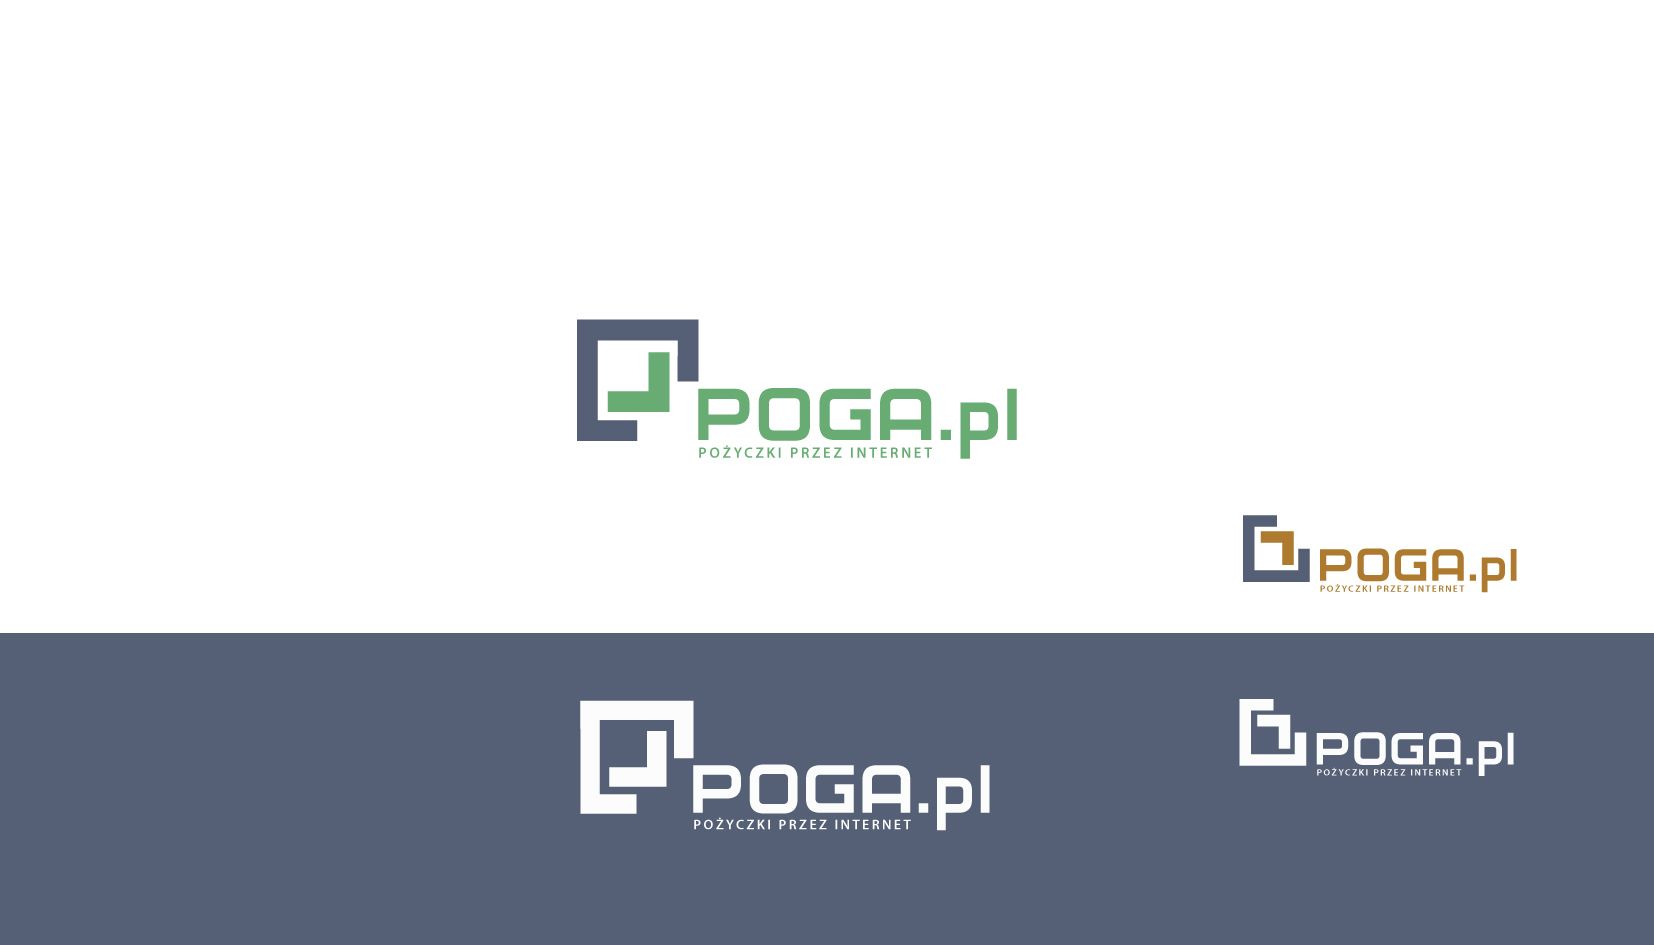 Логотип для POGA или POGA.pl - дизайнер andblin61